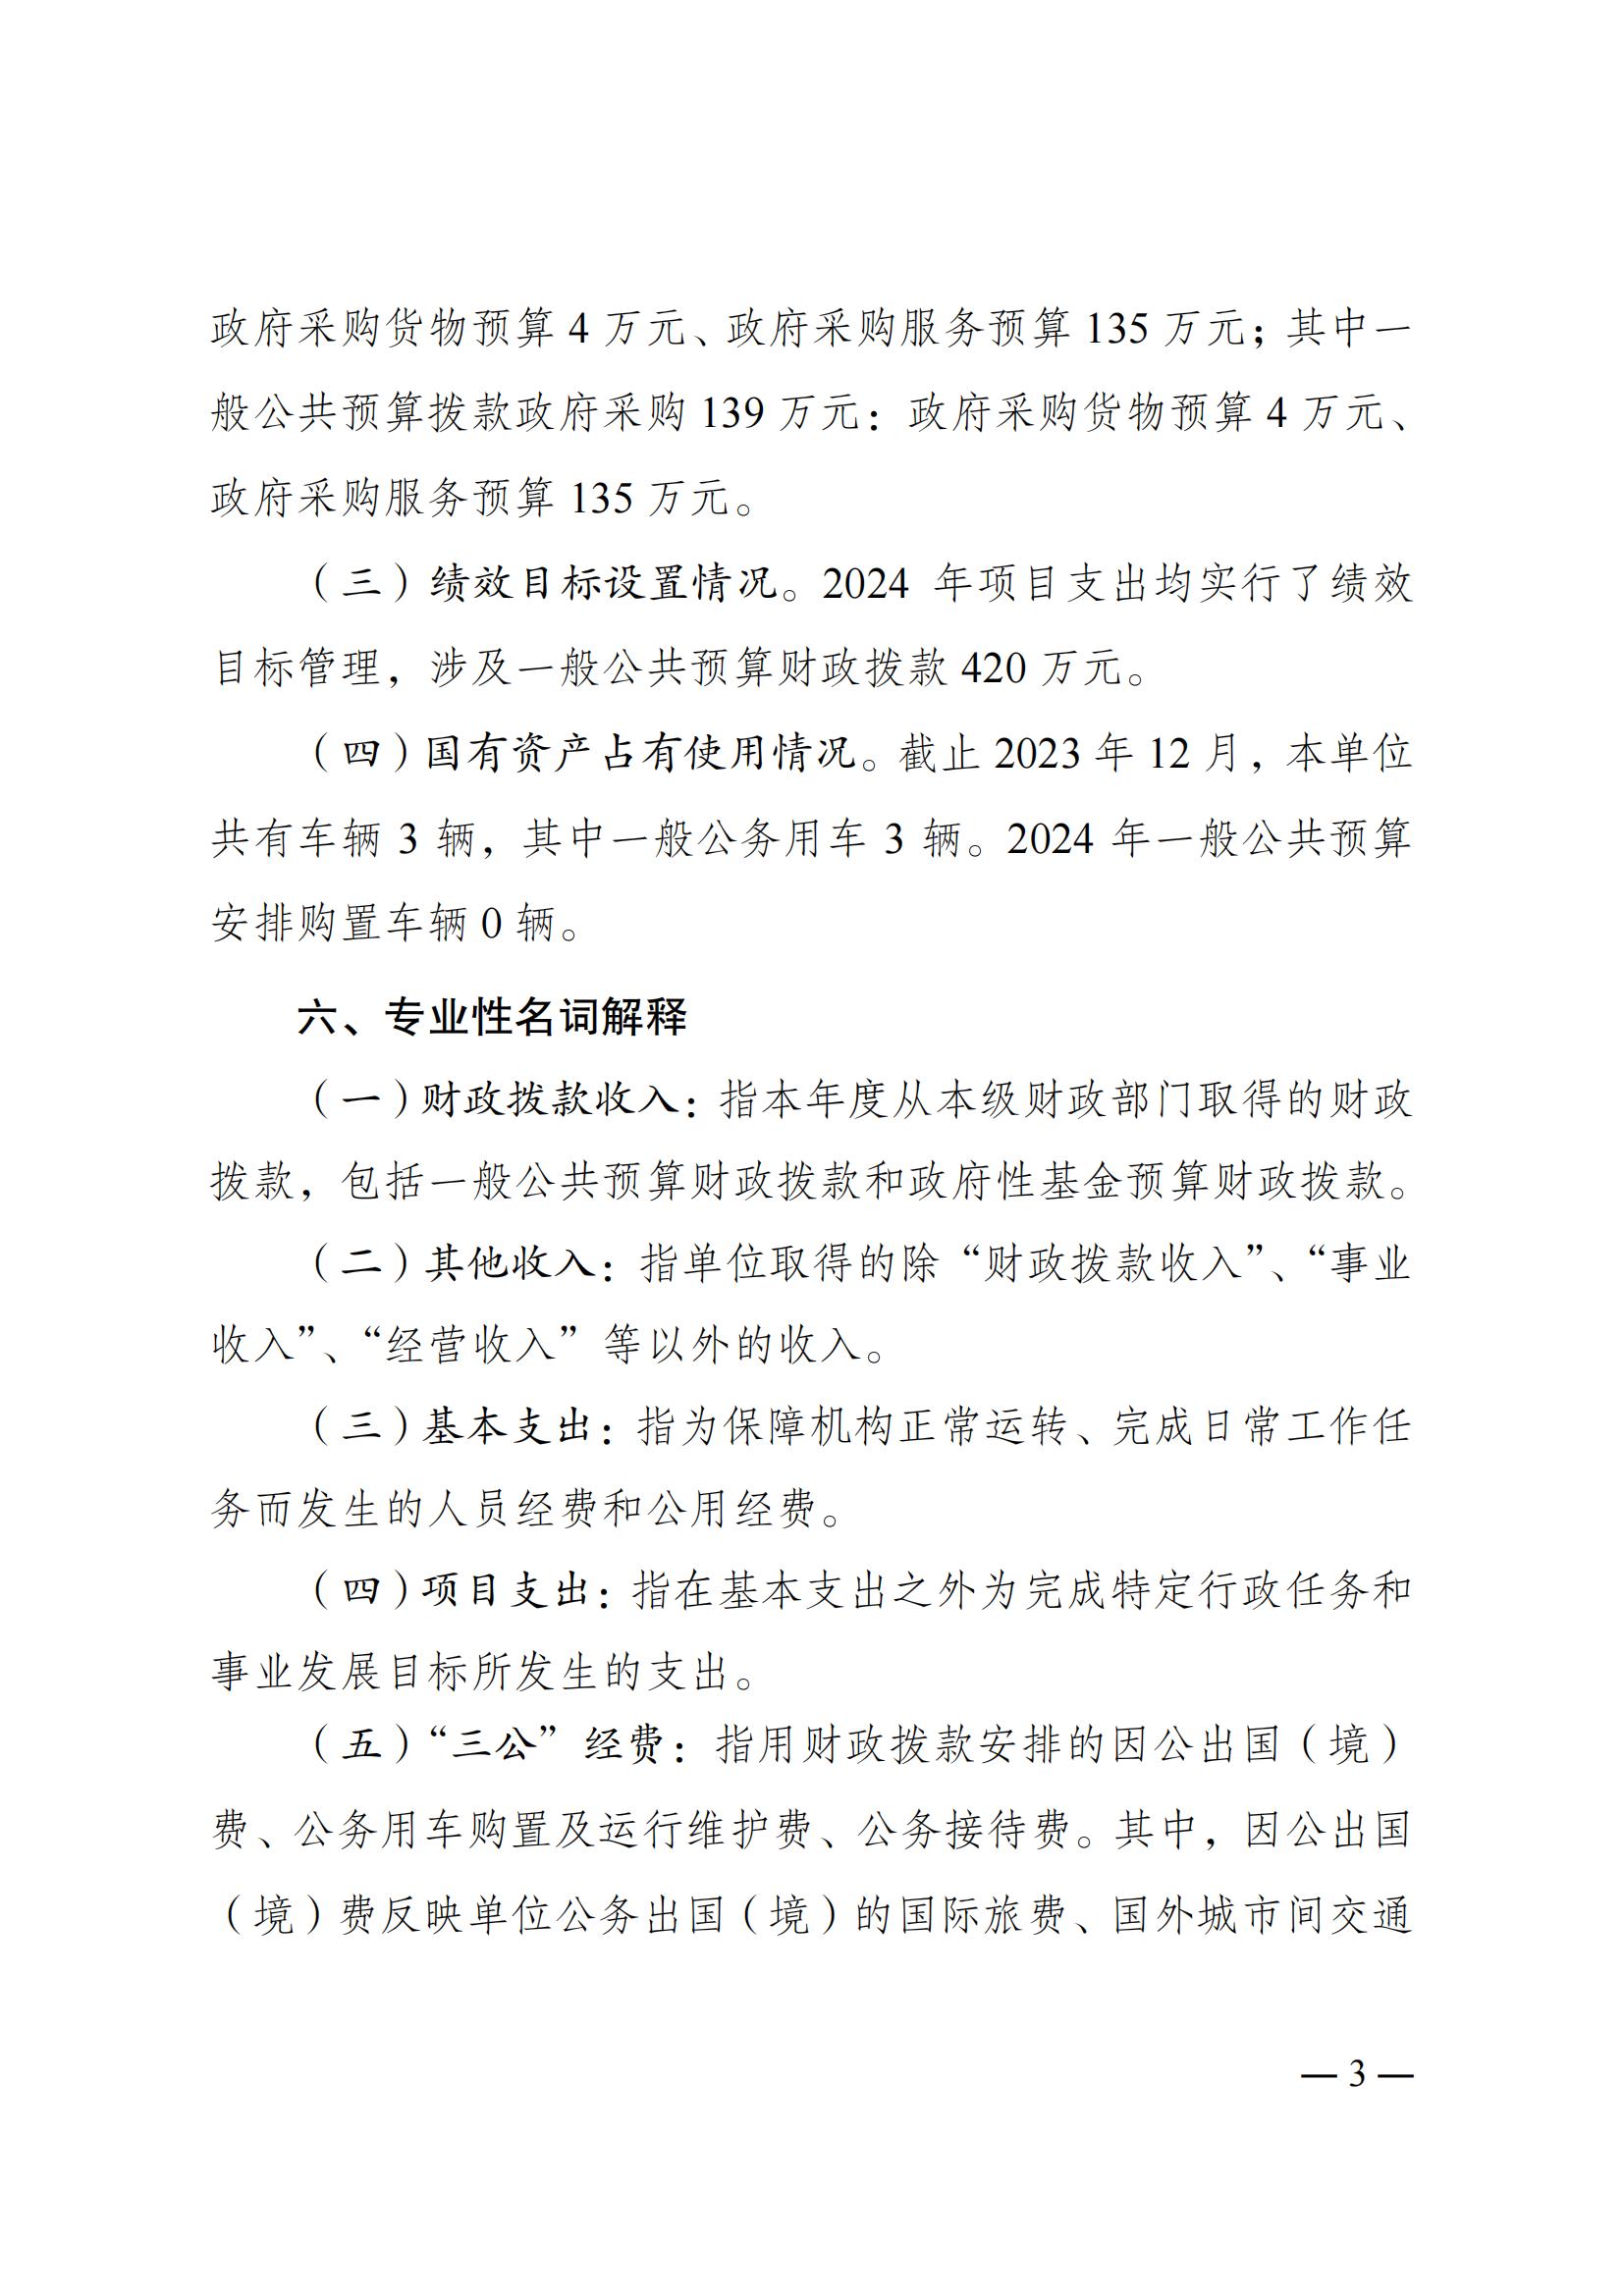 重庆市医疗设备质量检测所2024年单位预算情况说明_02.jpg